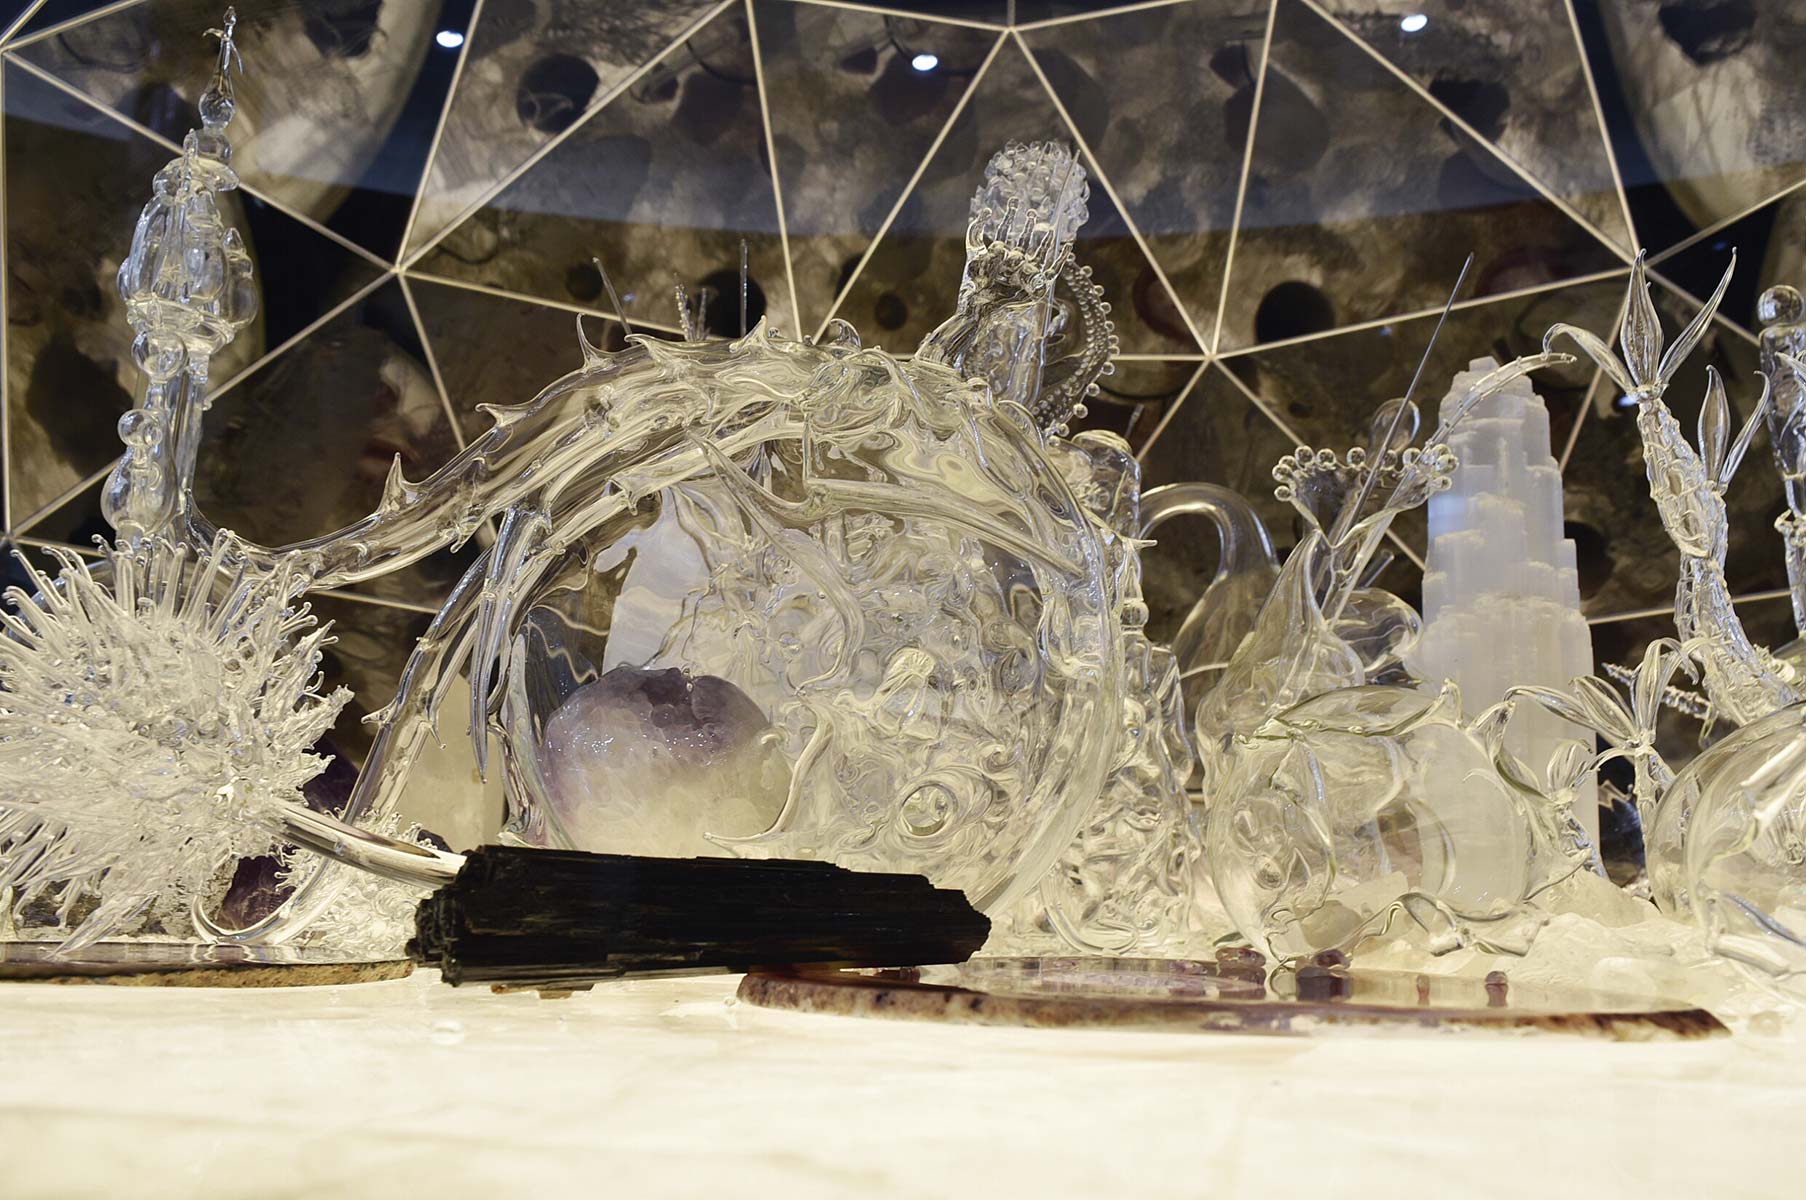 Die Ausstellung von Melli Ink unter der Bisazza Kuppel im Swarovski Kristallwelten Store